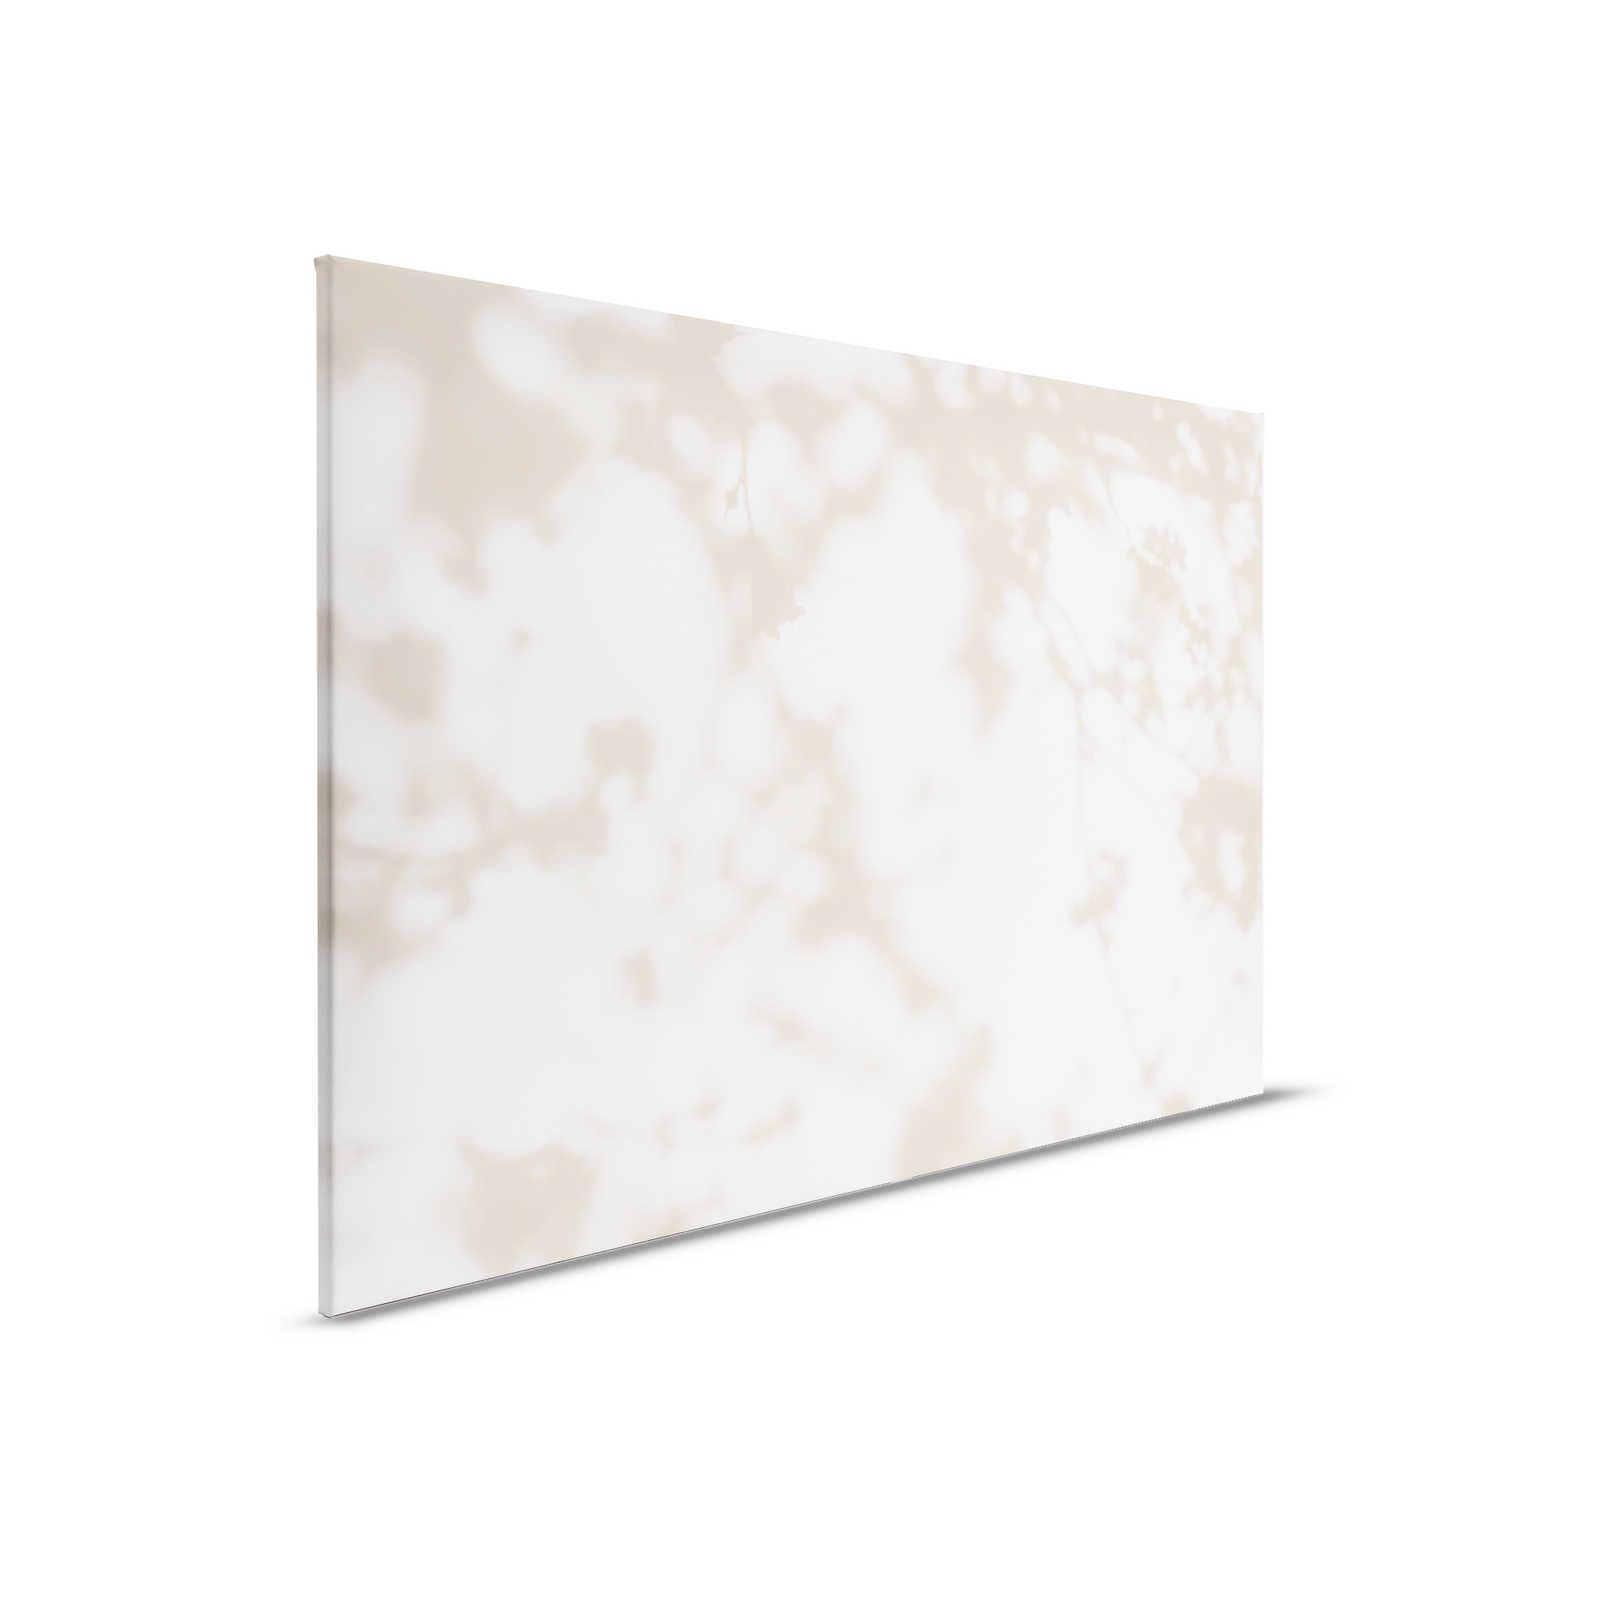 Lichtkamer 3 - Canvas schilderij Nature Shadows in Beige & White - 0.90 m x 0.60 m
